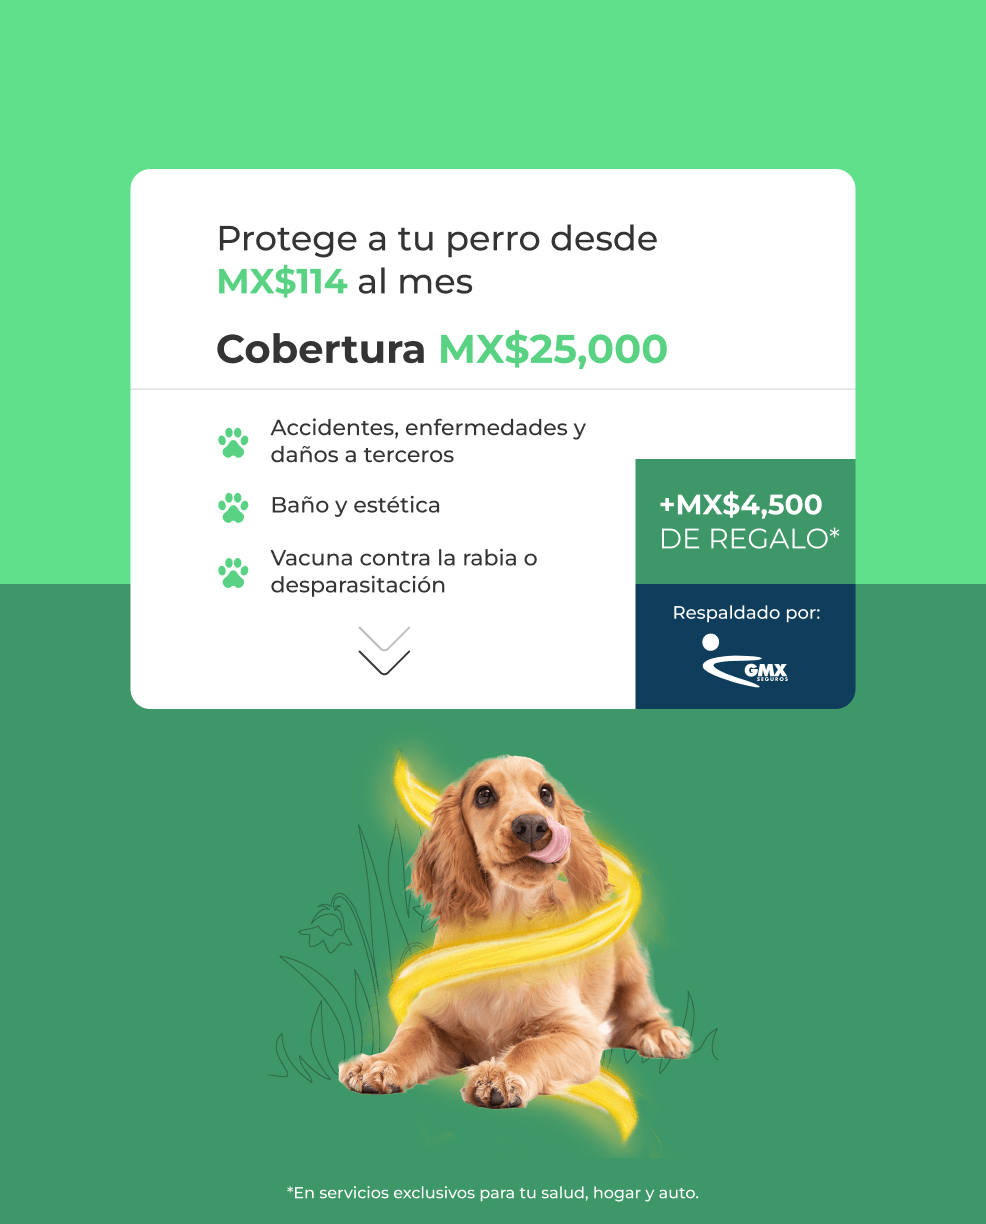 Protege a tu perro desde MX$114 al mes